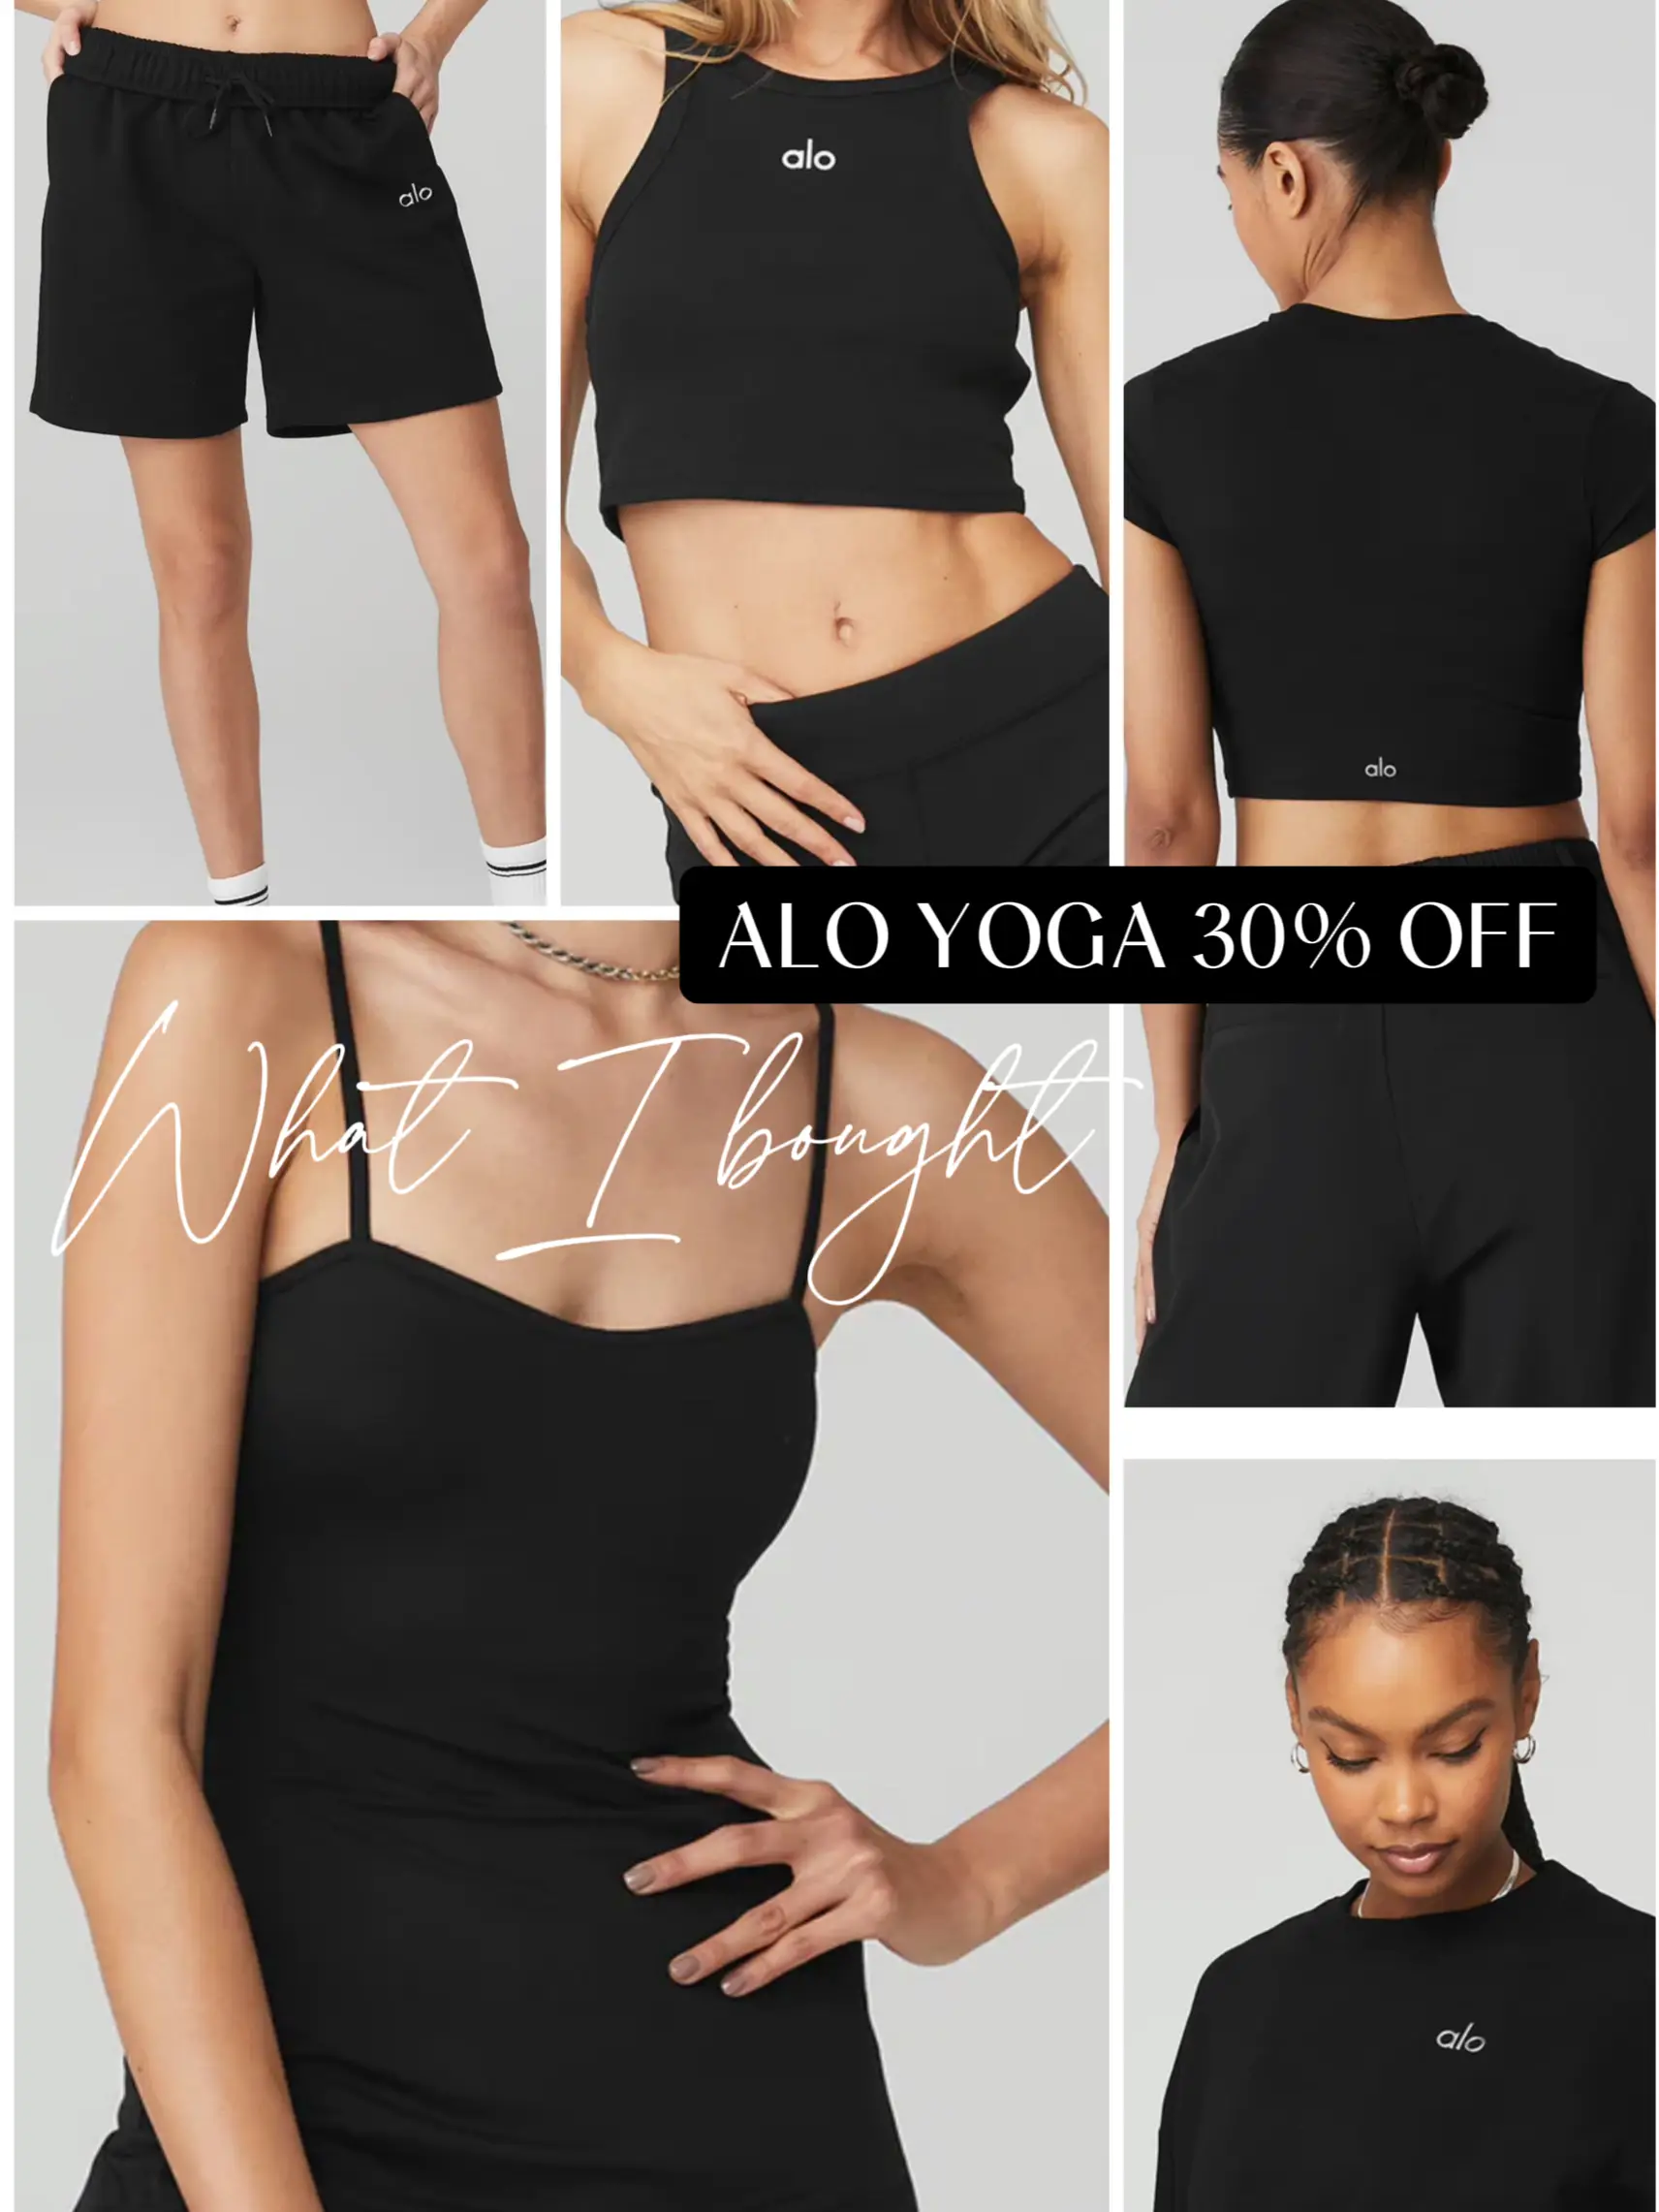 Alo Yoga Aspire Logo-print Tank Top in Black